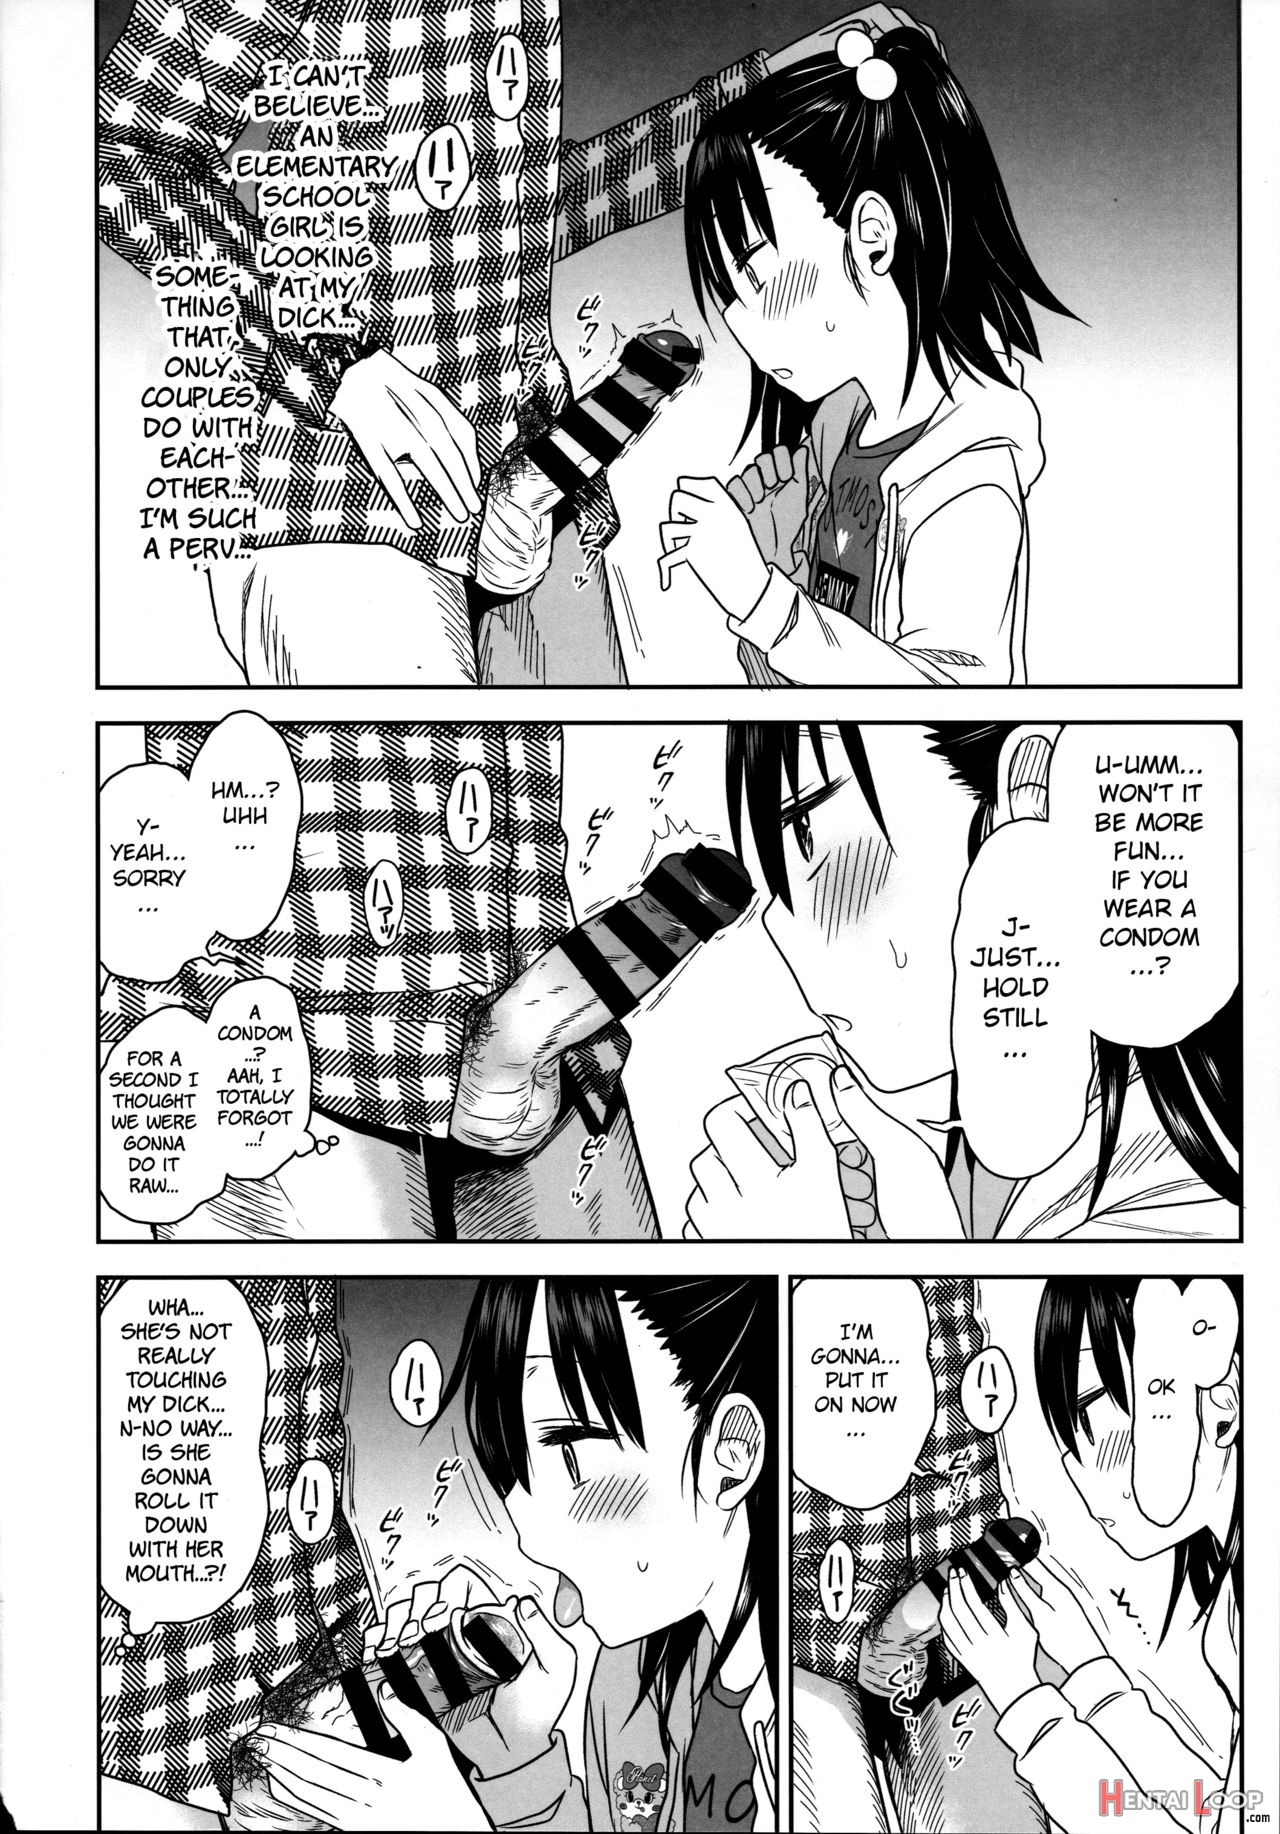 Tonari No Mako-chan Season 2 Vol. 2 page 22